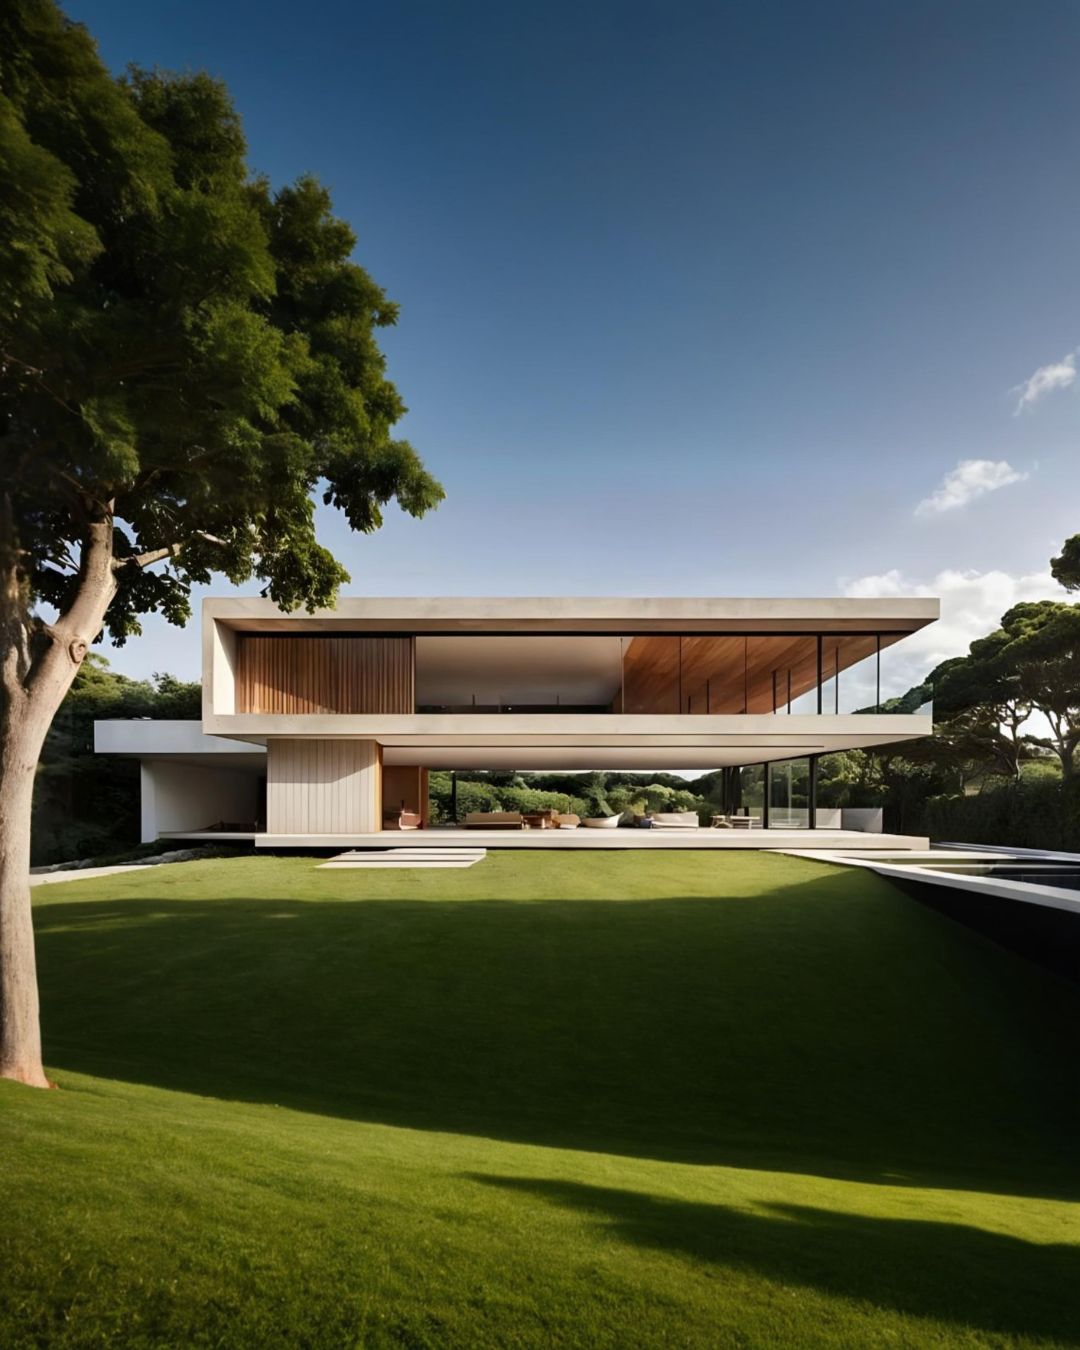 Residência de luxo moderna no Brasil com arquitetura minimalista, grandes janelas e paisagem verde.